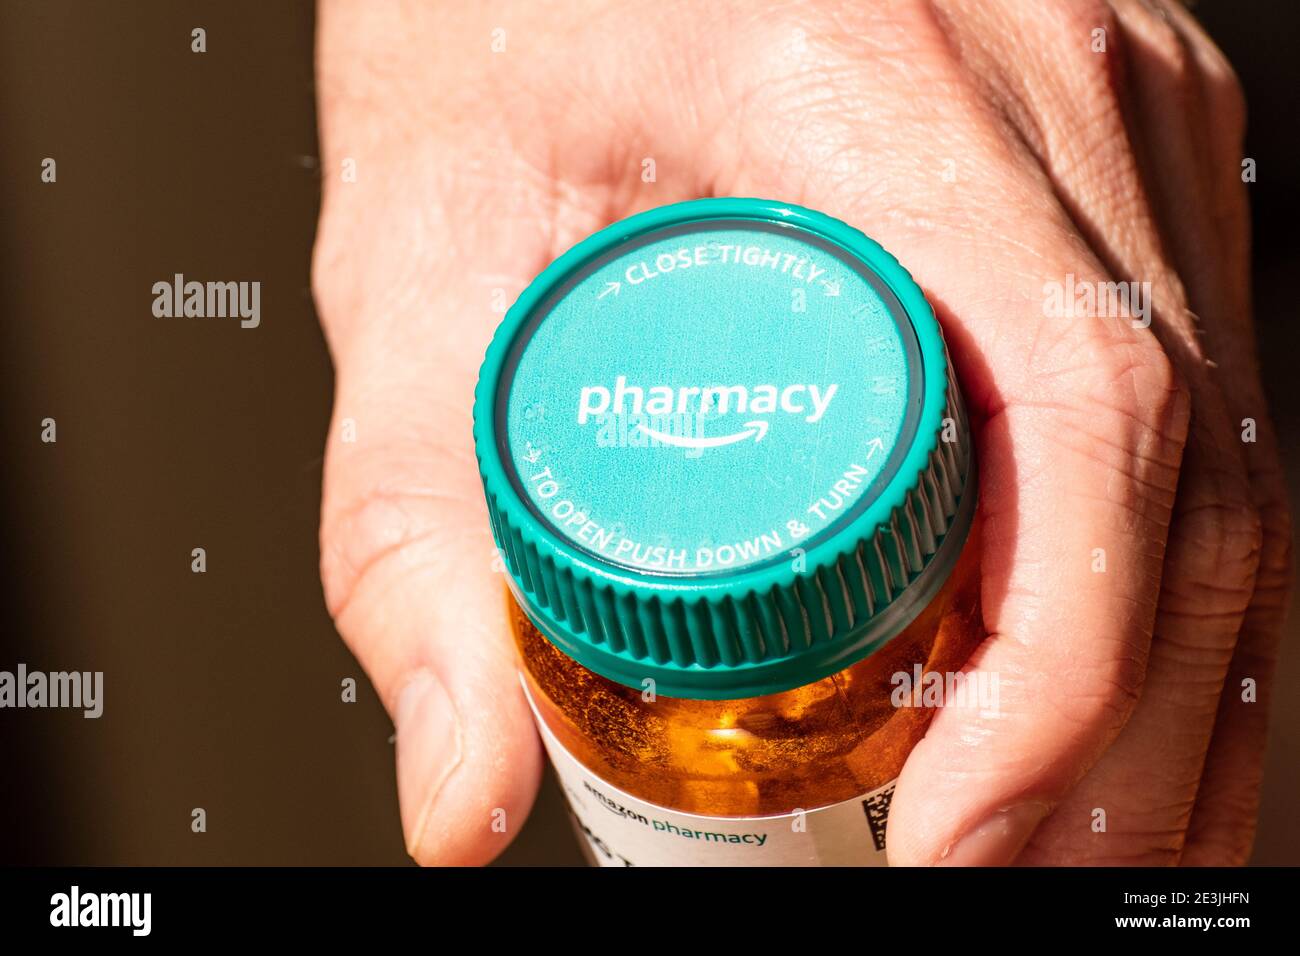 Mano che tiene una bottiglia di Amazon Pharmacy Rx; Amazon Pharmacy è una farmacia online americana, filiale di Amazon.com; California, USA, 2020 Foto Stock